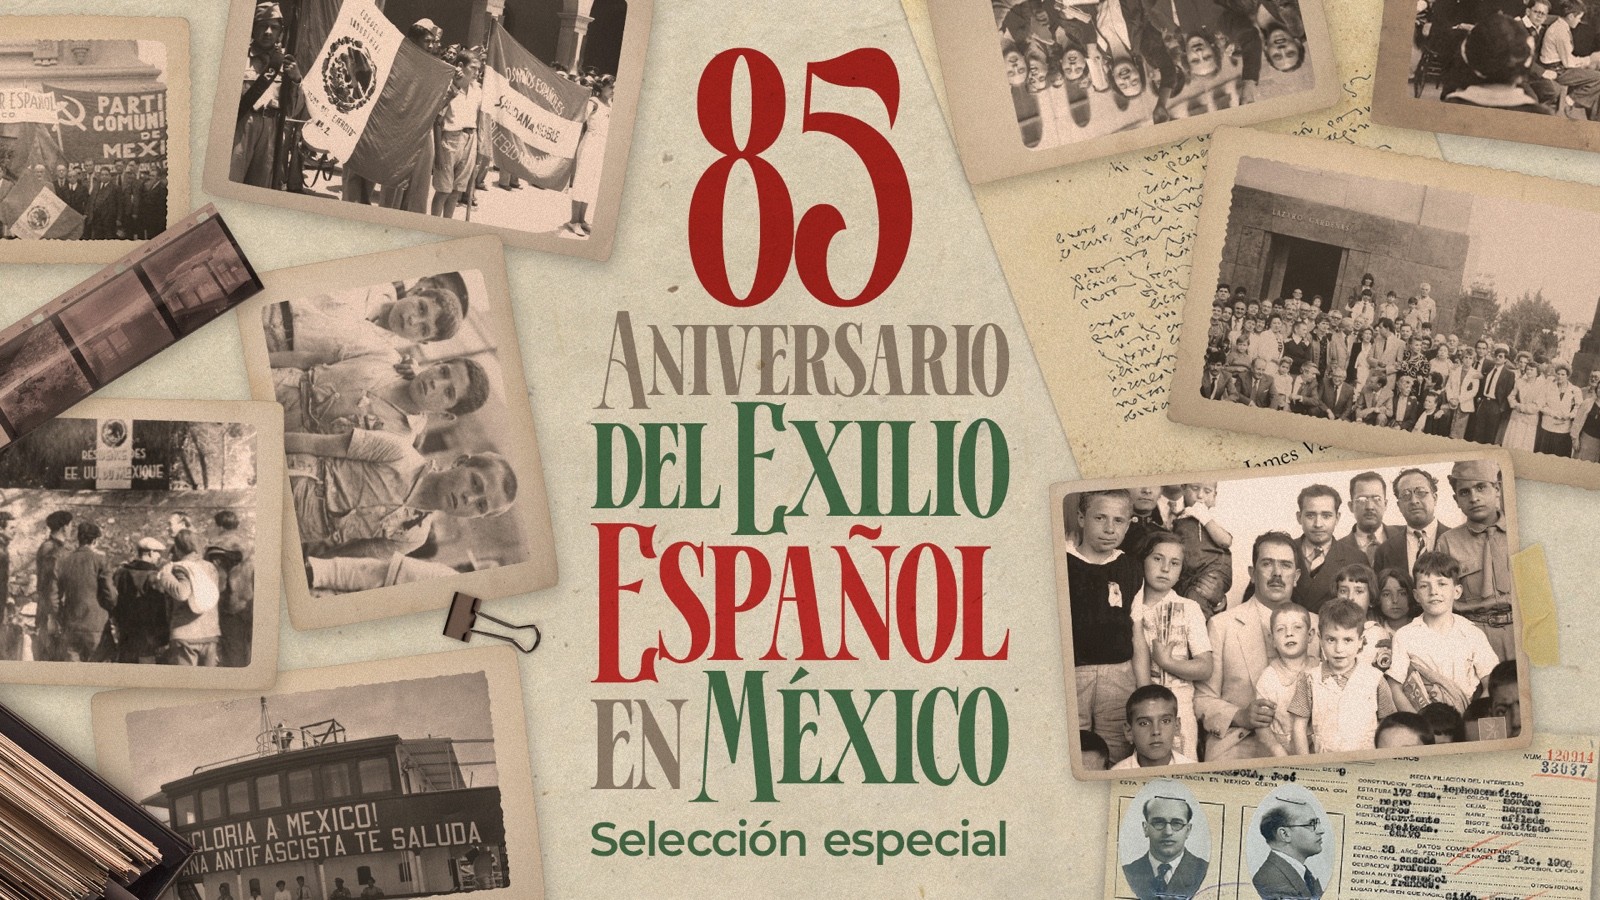 85 años del Exilio Español